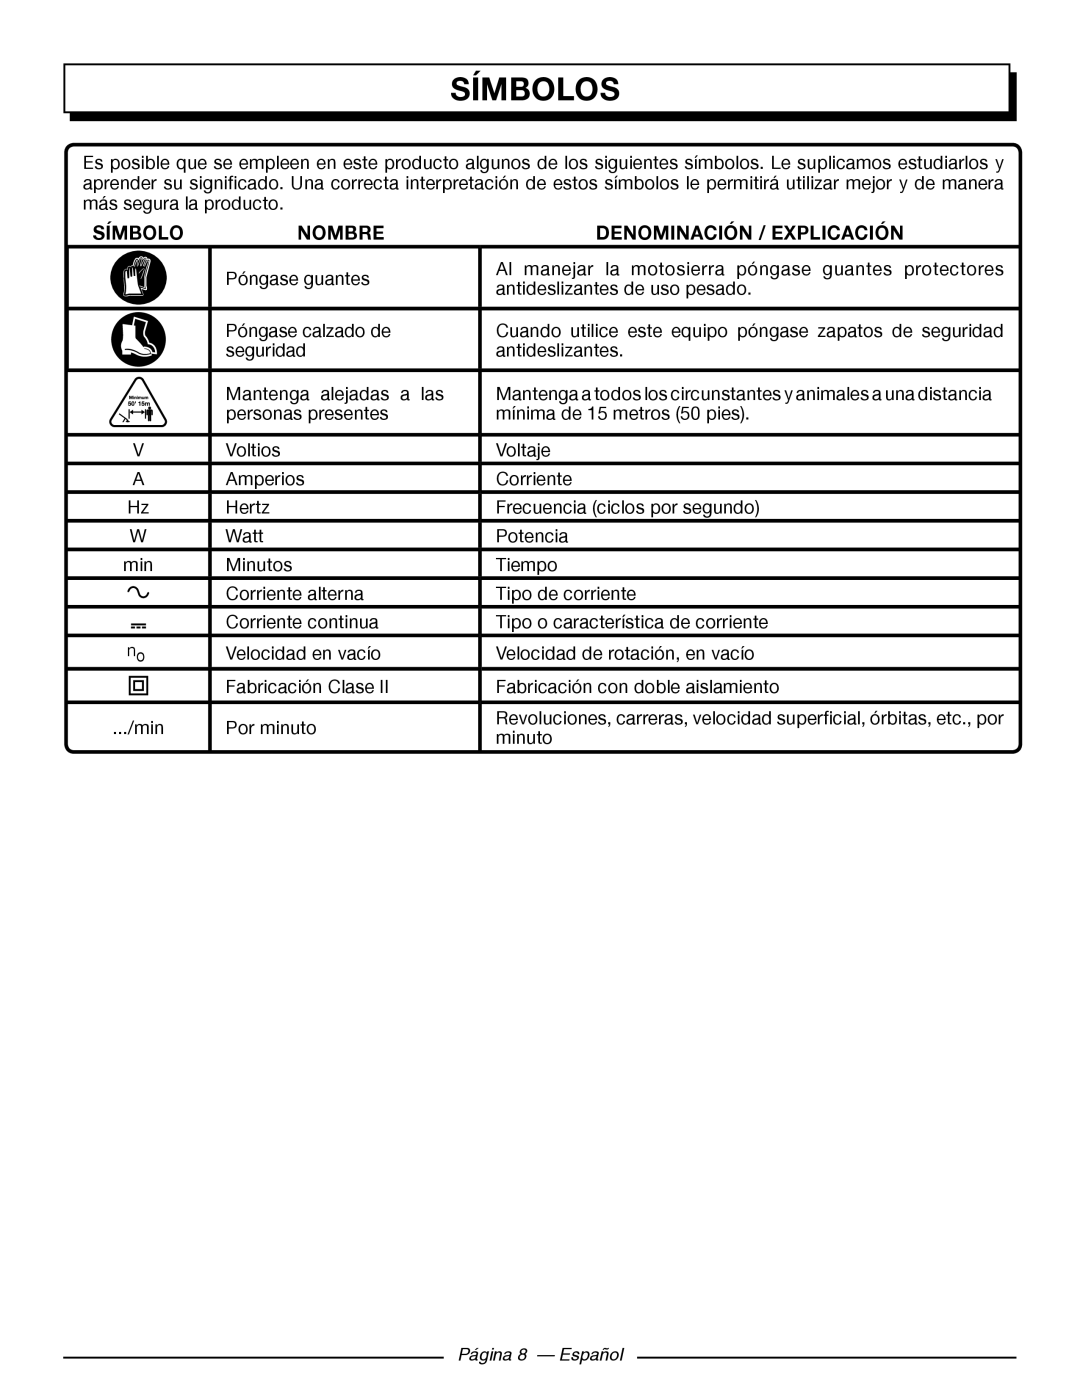 Homelite UT43122, UT43102 manuel dutilisation Símbolos, Nombre, Denominación / Explicación, Página 8 - Español 